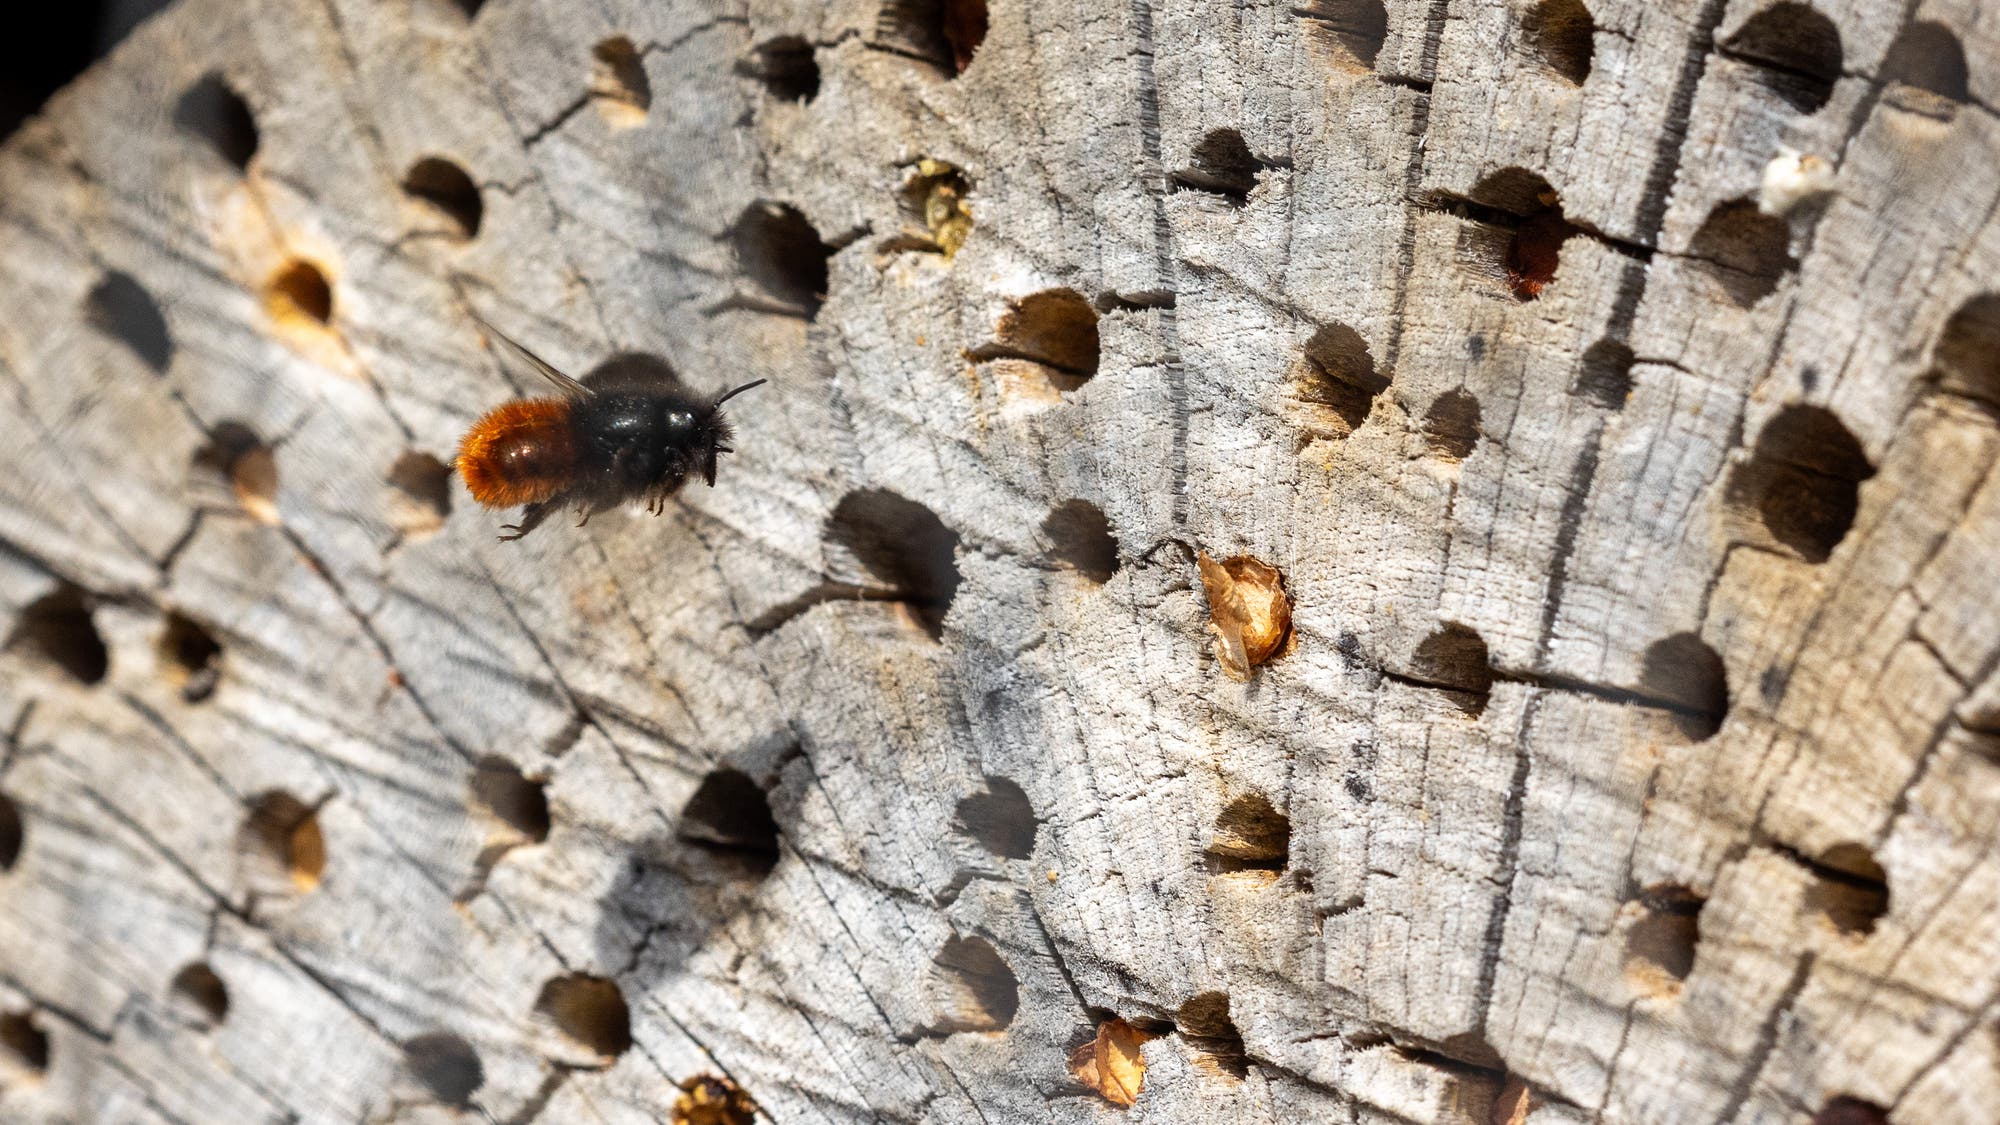 Eine weibliche Gehörnte Mauerbiene im Flug, erkennbar durch den orange gefärbten Hinterleib, das restliche Tier ist schwart. Rechts befindet sich eine Holzscheibe mit gebohrten Löchern, in denen die Insekten Eier ablegen können.